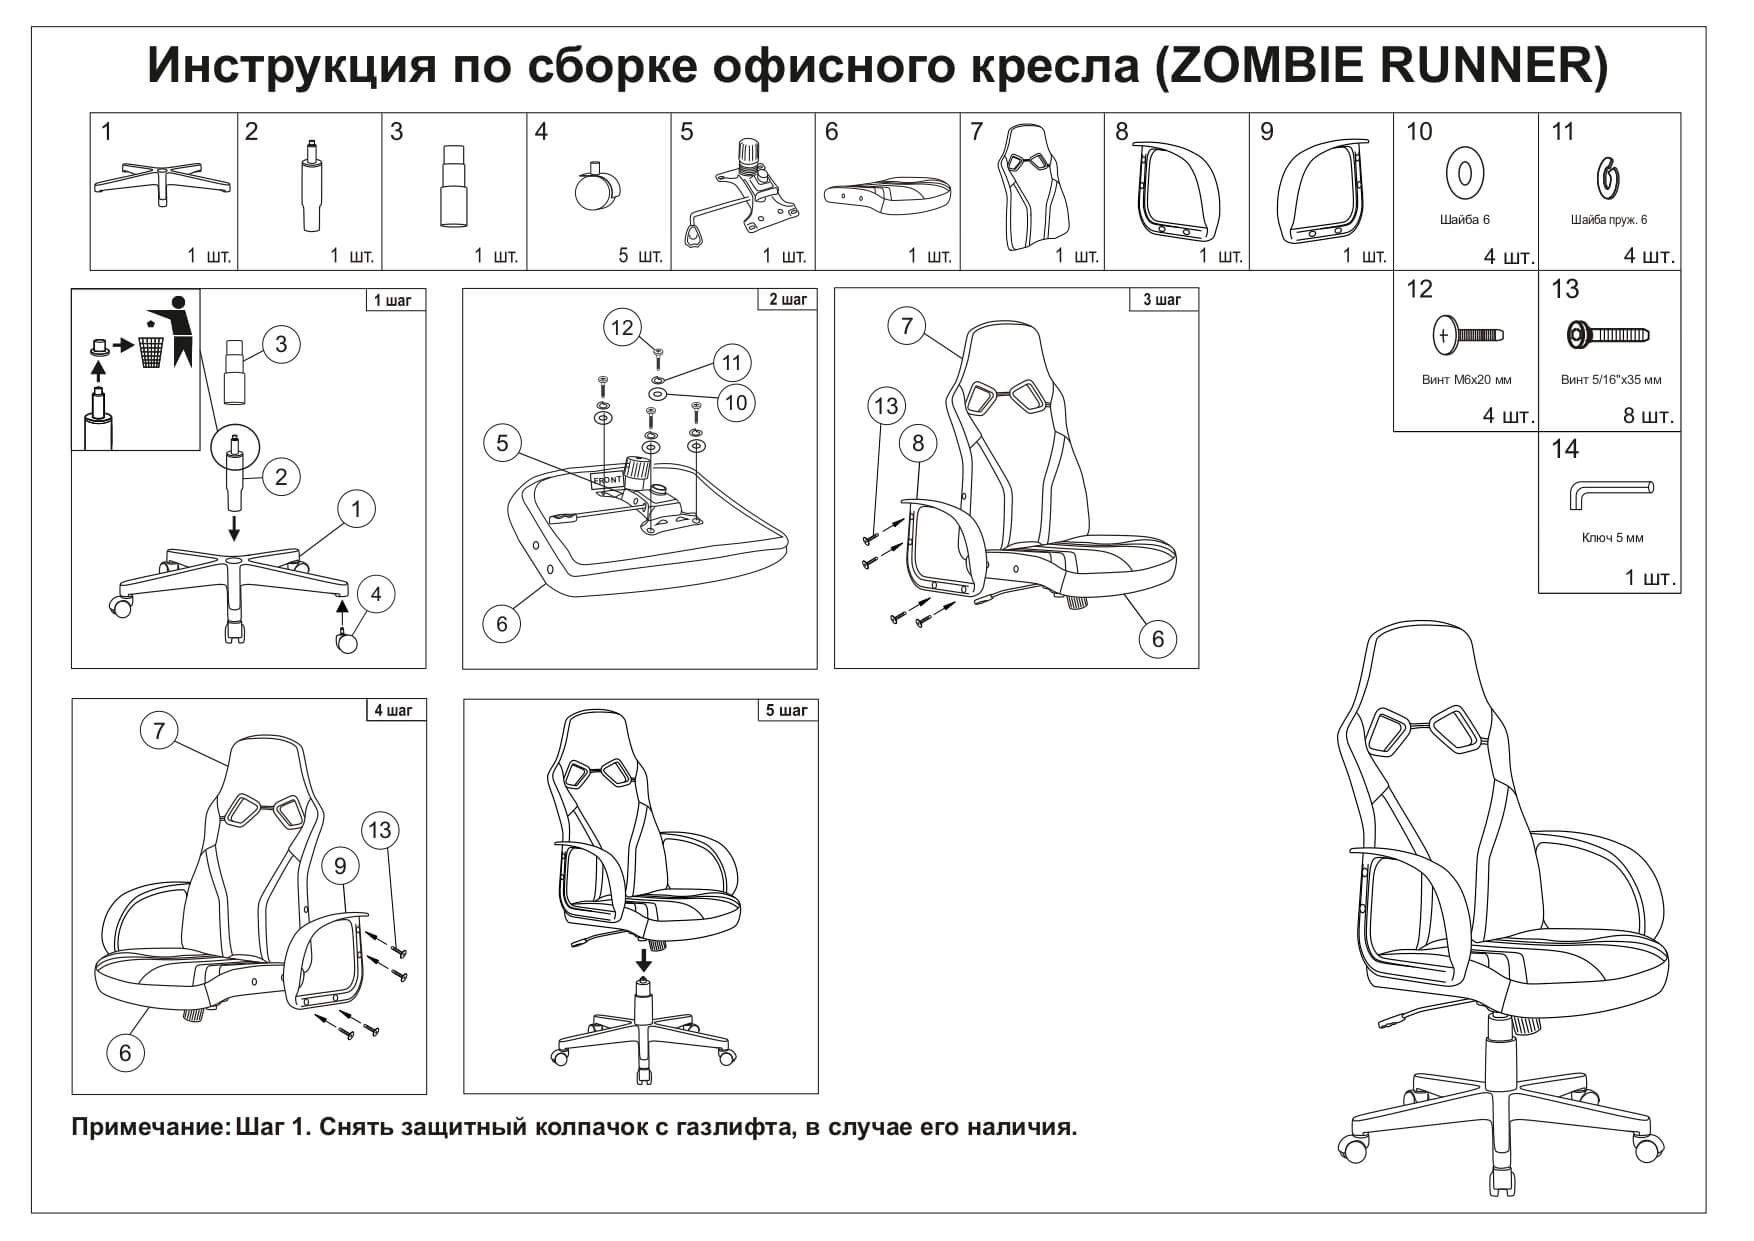 Кресло игровое Zombie Runner геймерское 10